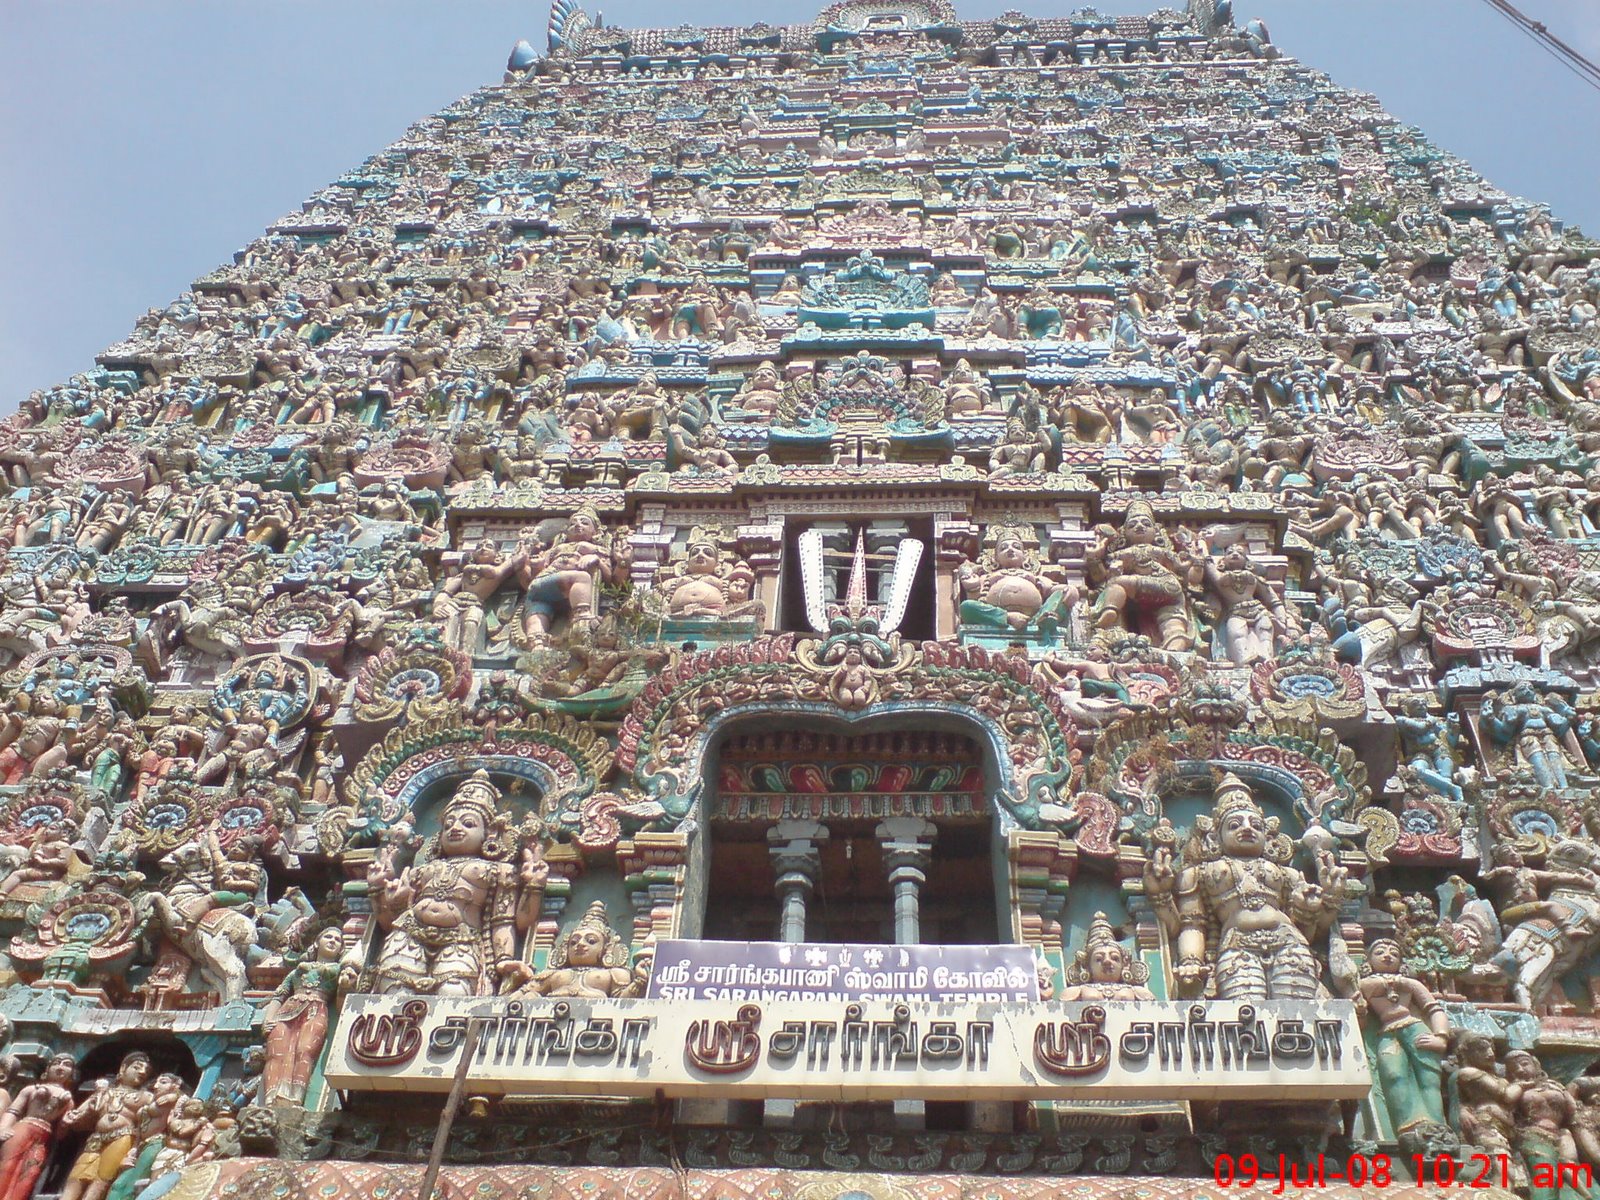 Sarangapaani Perumal Vishnu Temple-Kumbakonam